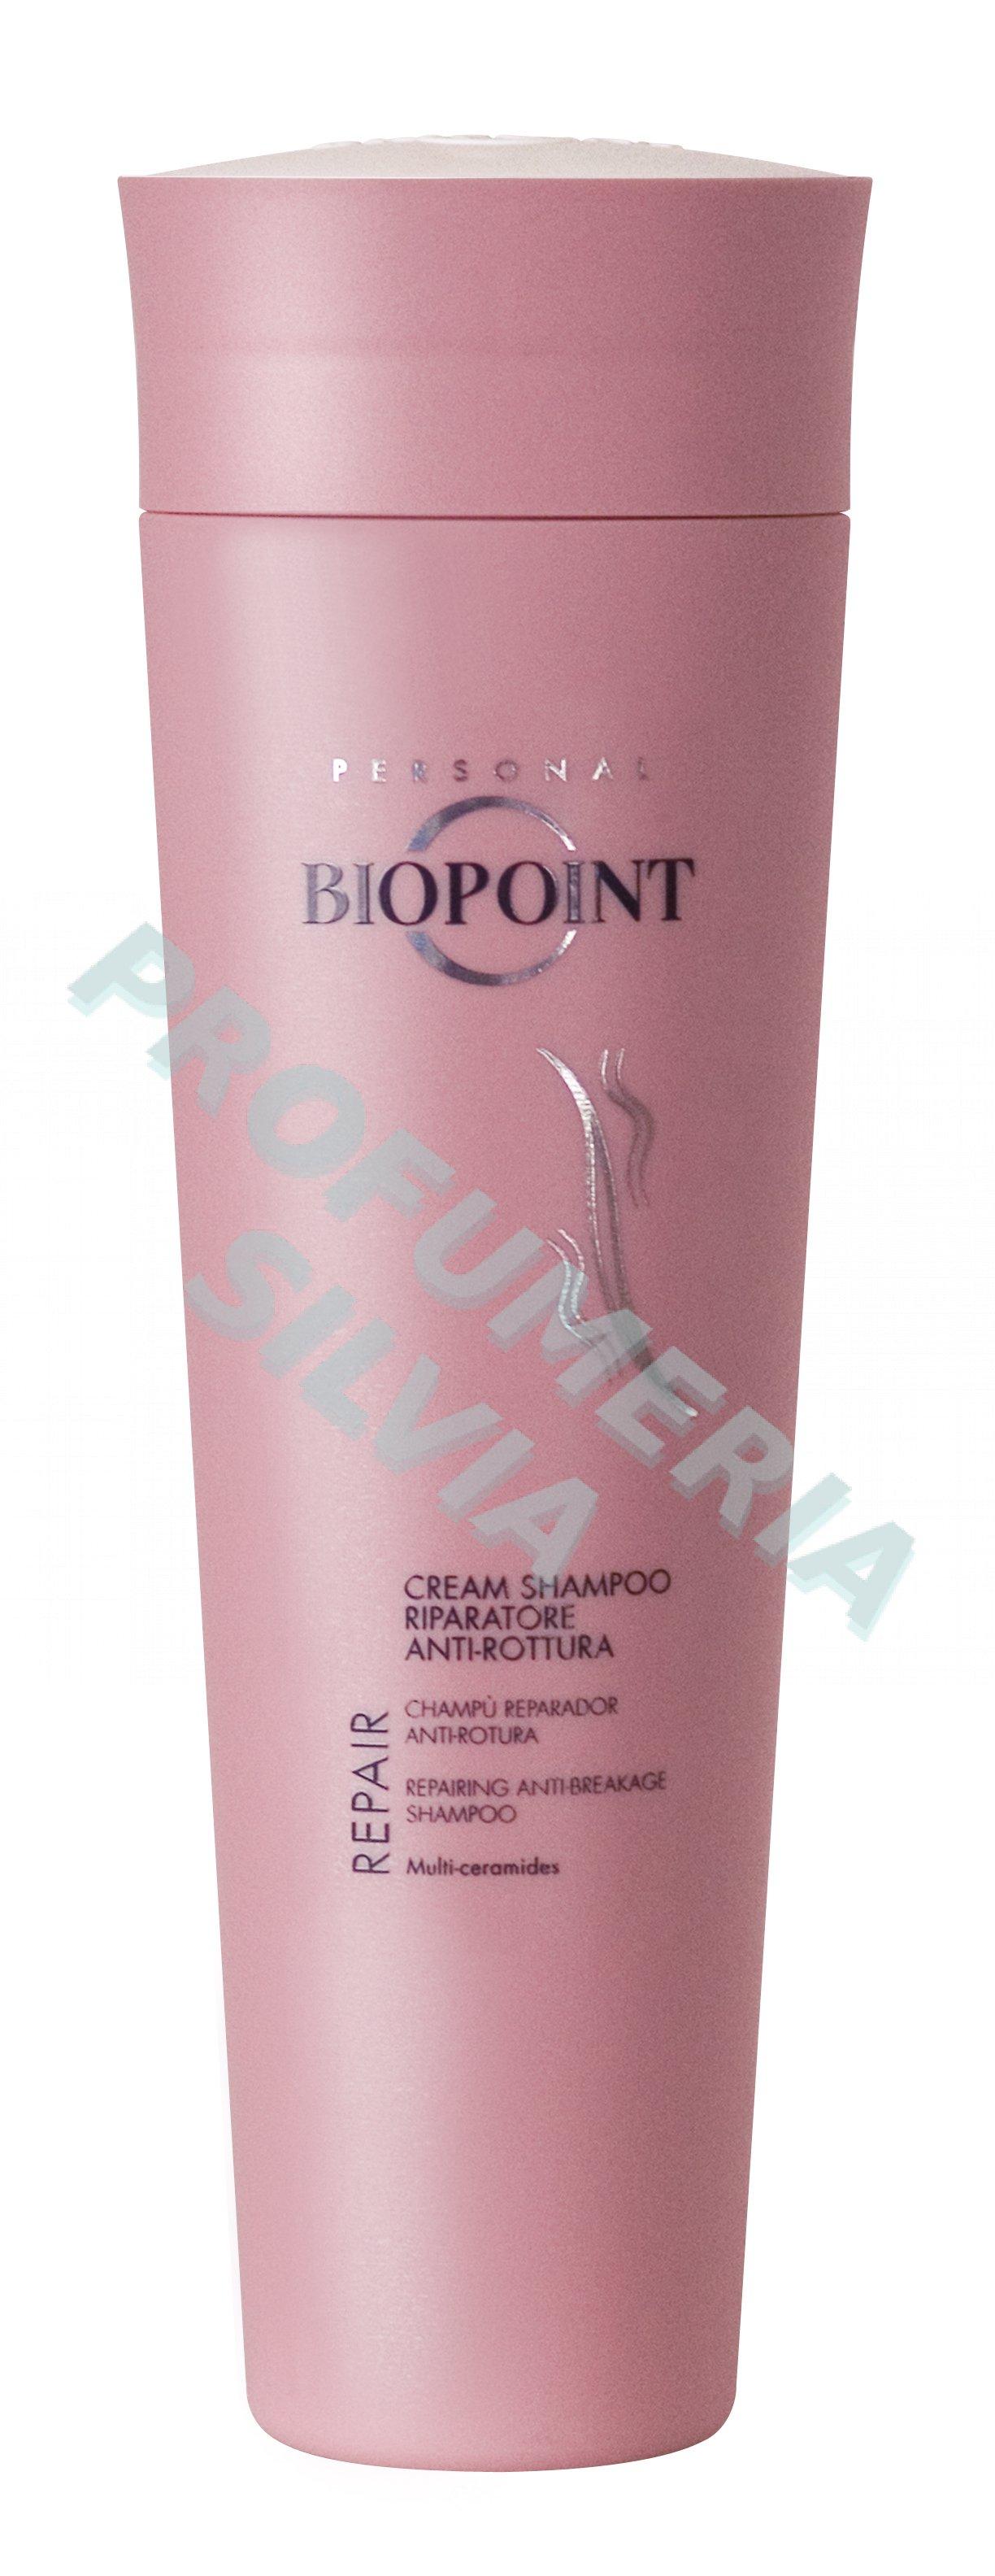 Foto repair cream-shampoo 200ml Biopoint